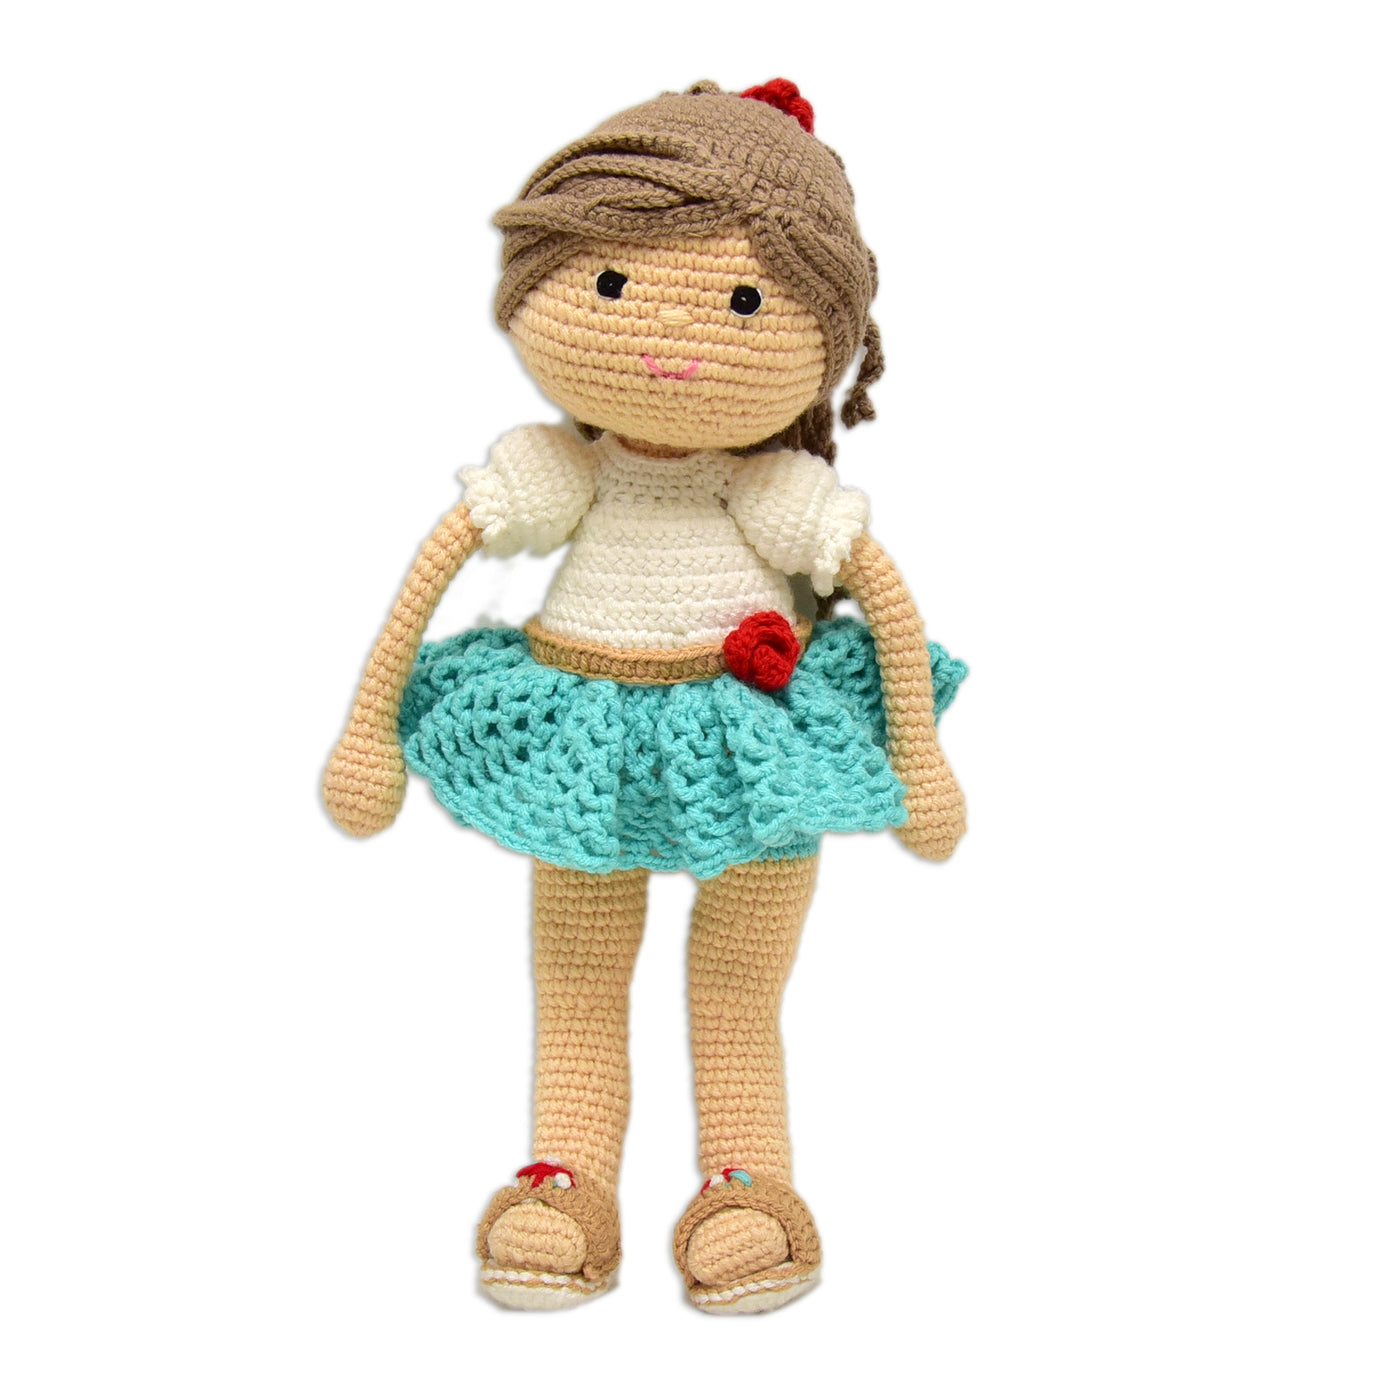 Handcrafted Amigurumi Katie Doll